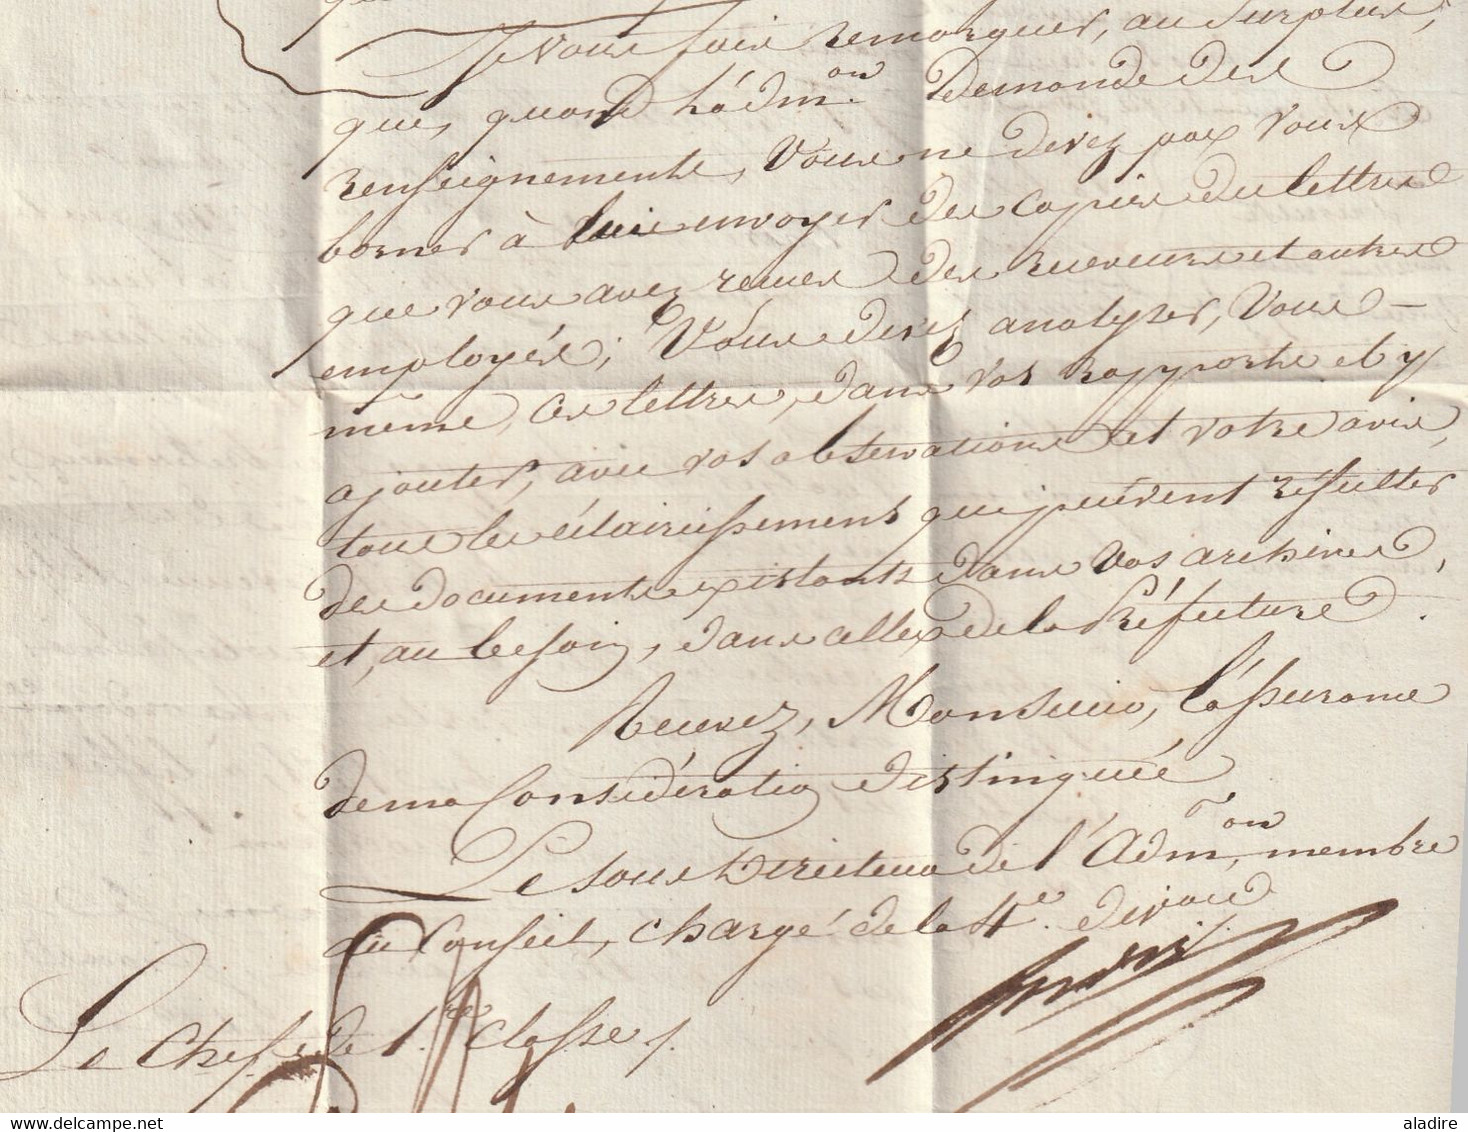 1832 - AFFRANCHI PAR ETAT Ministère des Finances Lettre pliée de Paris vers LONS LE SAUNIER, Jura - dateur en arrivée